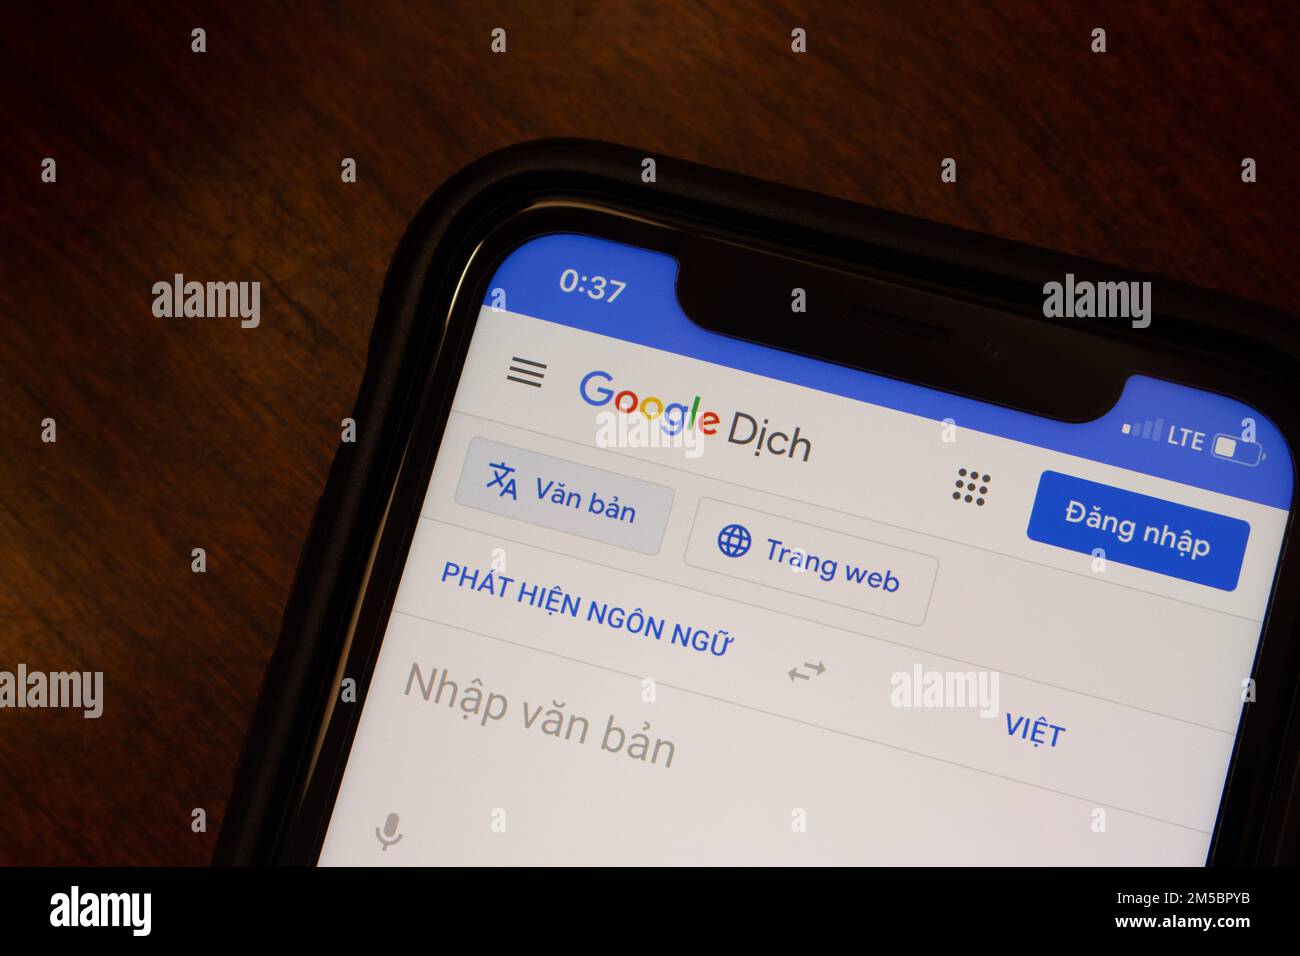 Vancouver, CANADA - Déc 3 2022 : le site de Google Dich, Google Translate en vietnamien, vu dans un écran d'iPhone. Banque D'Images